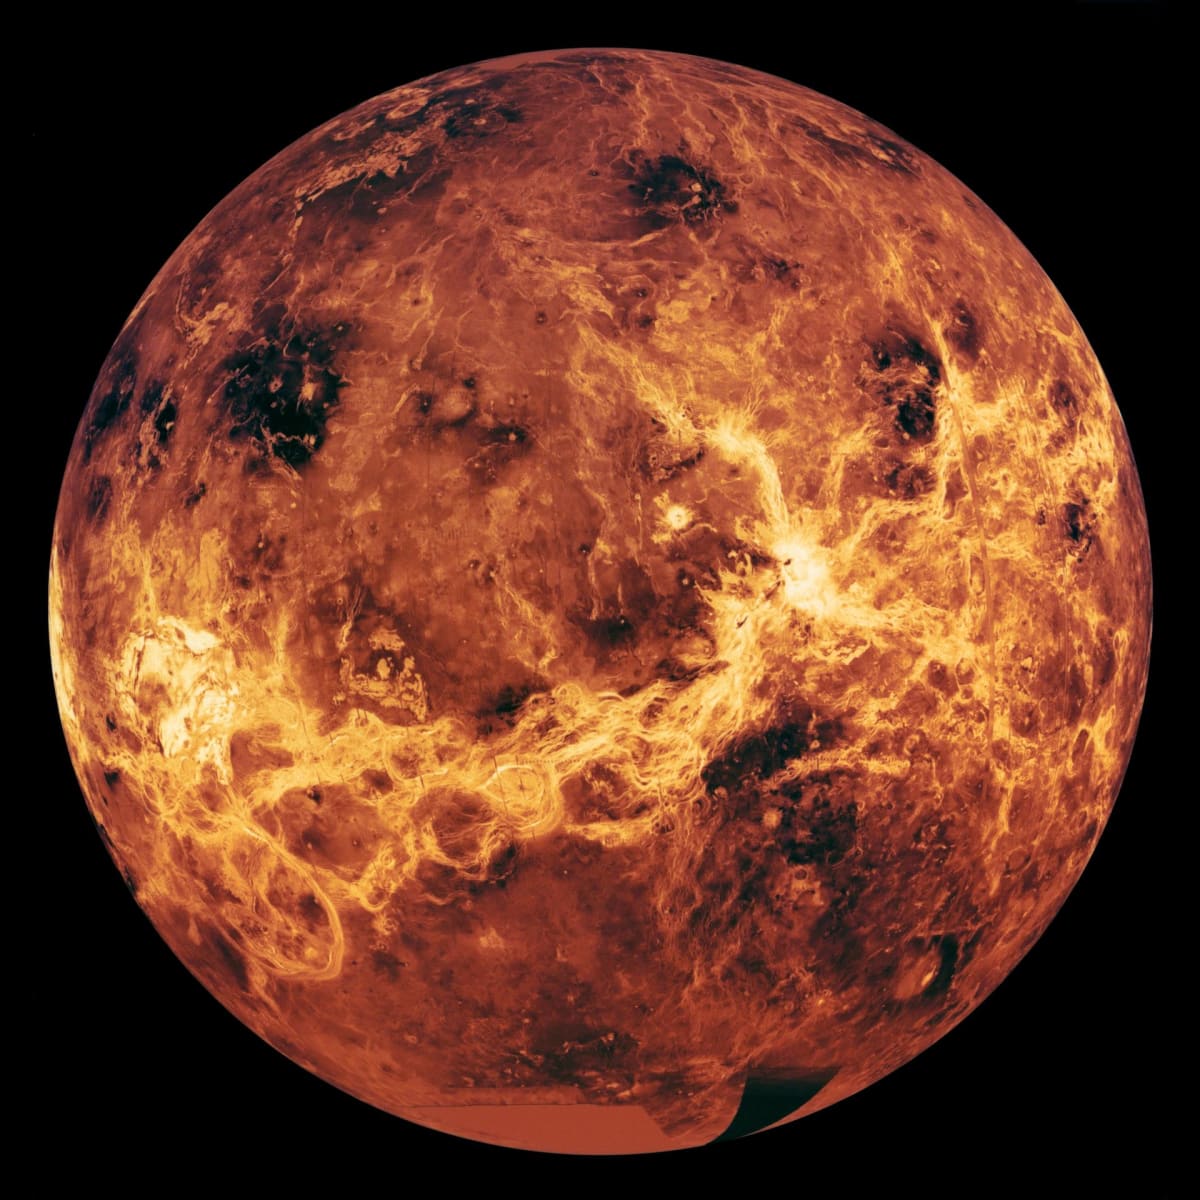 Pohled na planetu Venuši kombinuje data získaná ze sond Magellan, Veněra a Pioneer